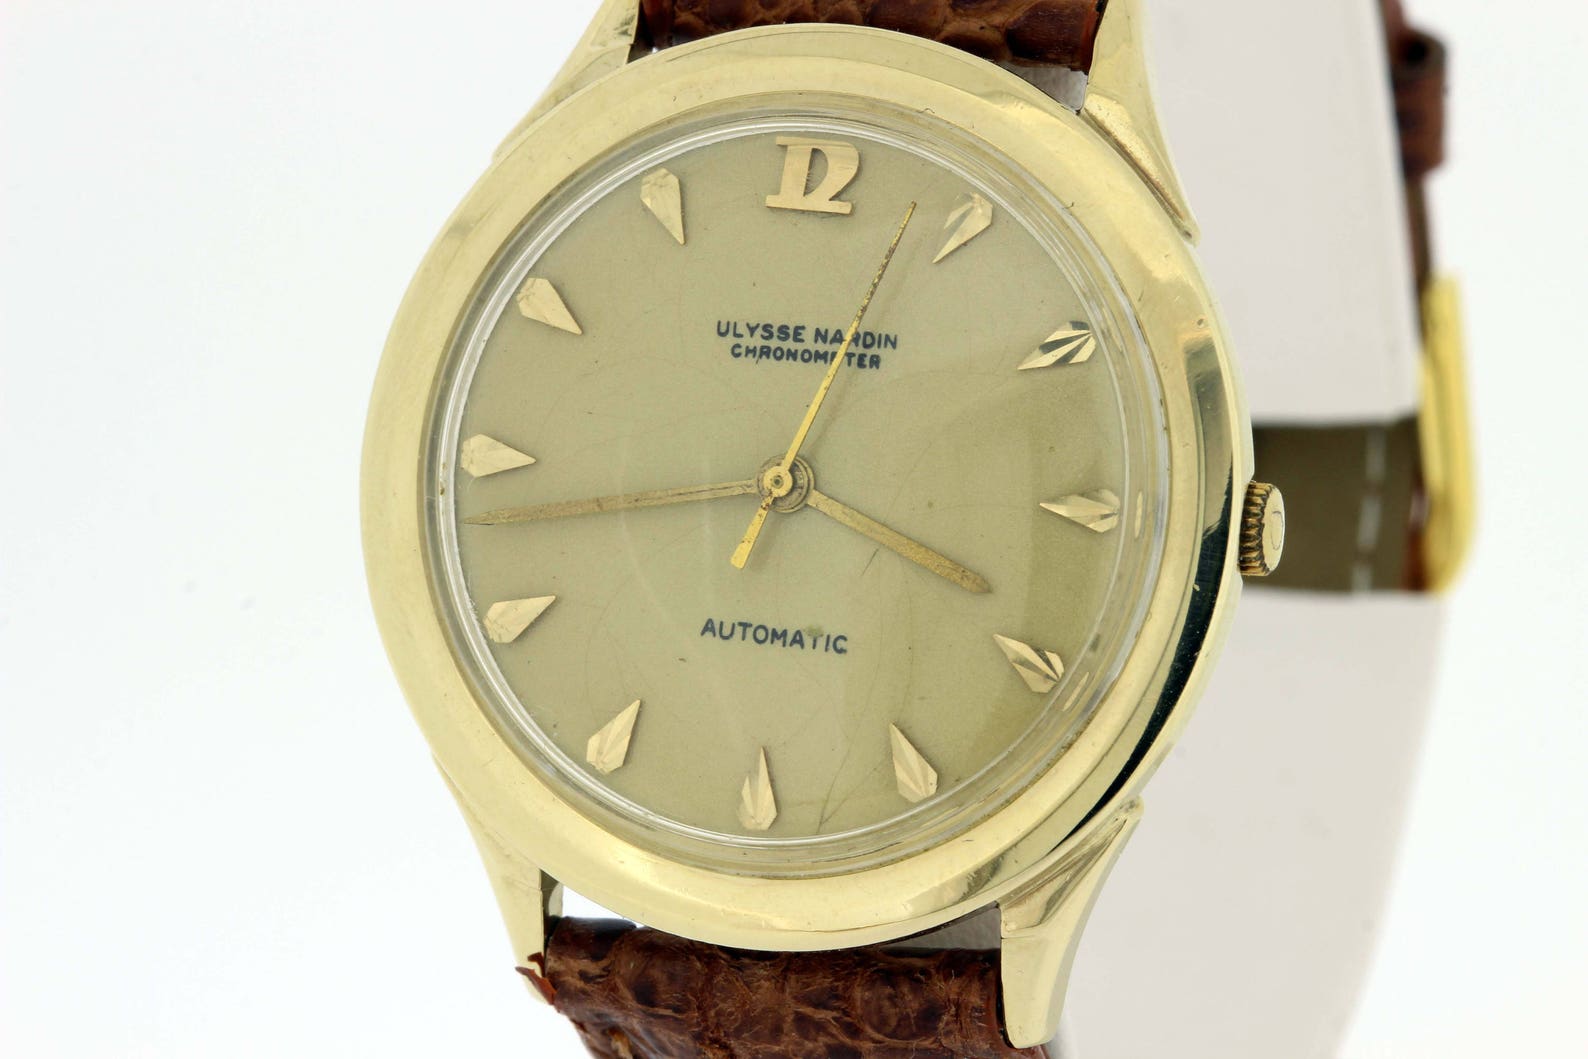 1960s Ulysse Nardin Chronometer Automatic Wrist Watch 14K Gold | Etsy